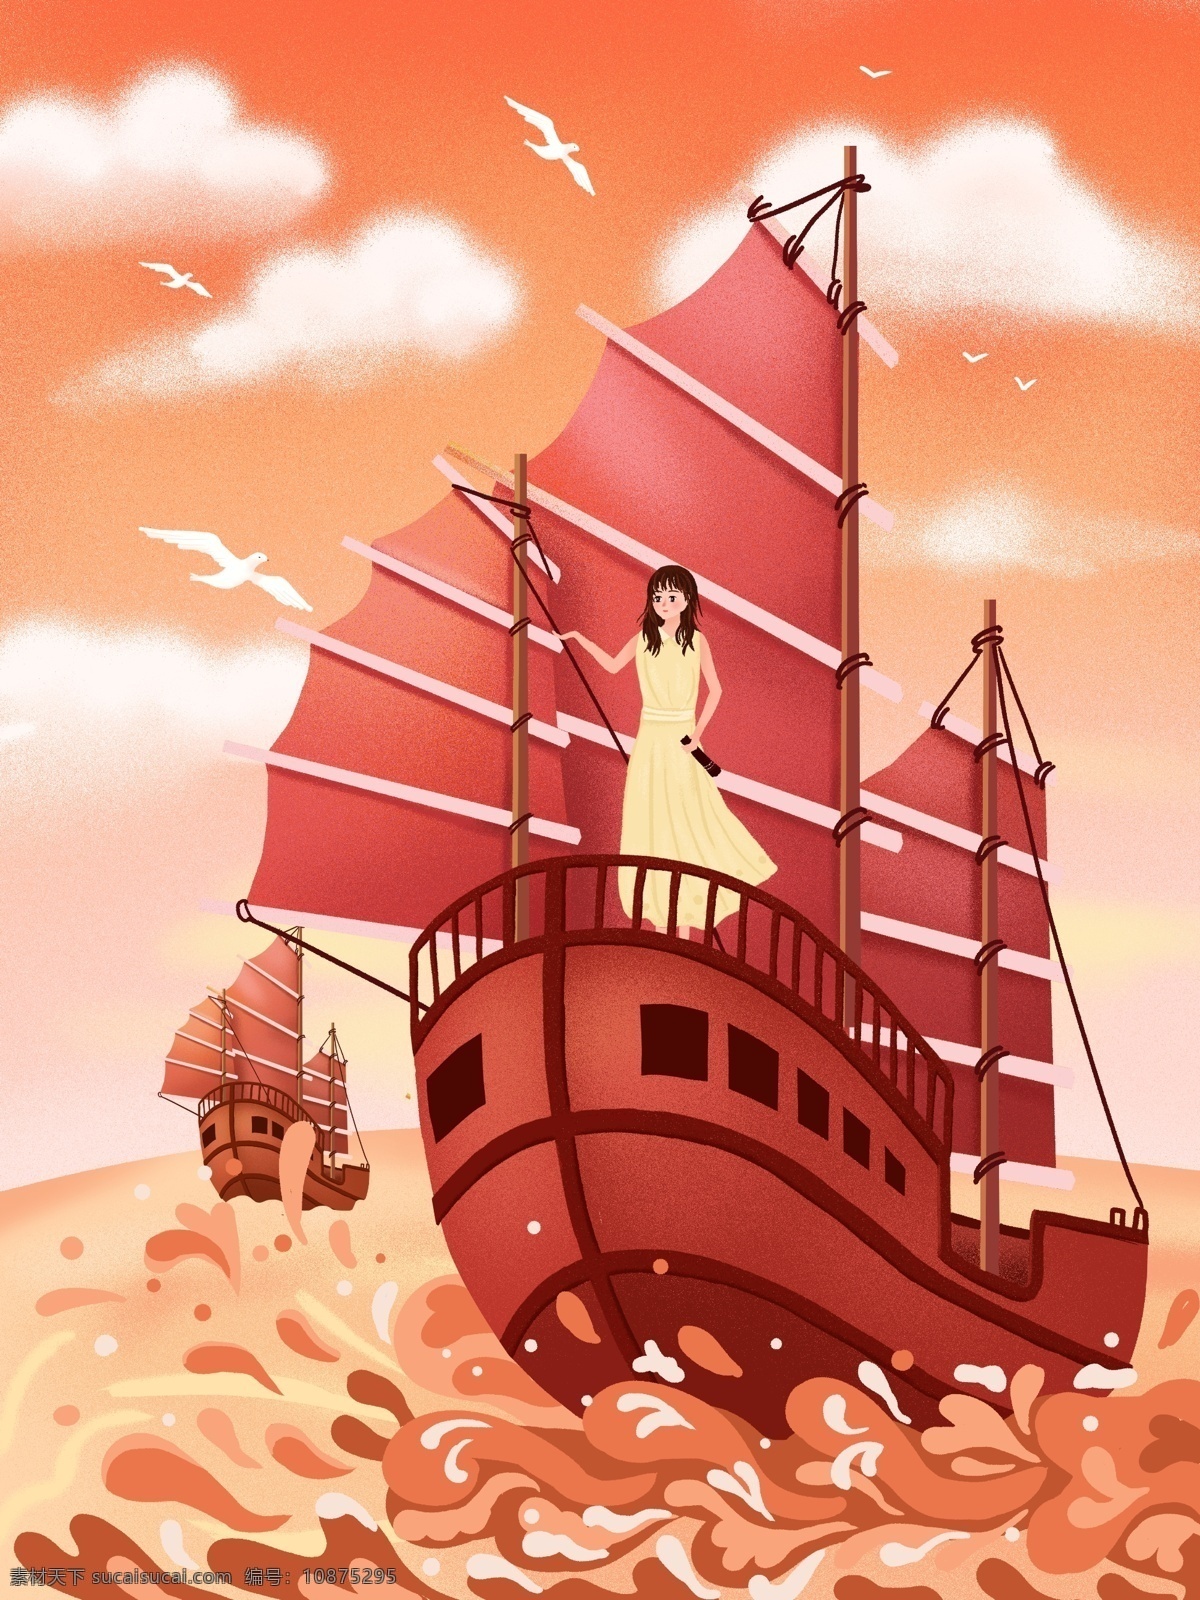 唯美 清新 国际 航海 日 插画 唯美清新 出海 船 轮船 女孩 微信用图 手机用图